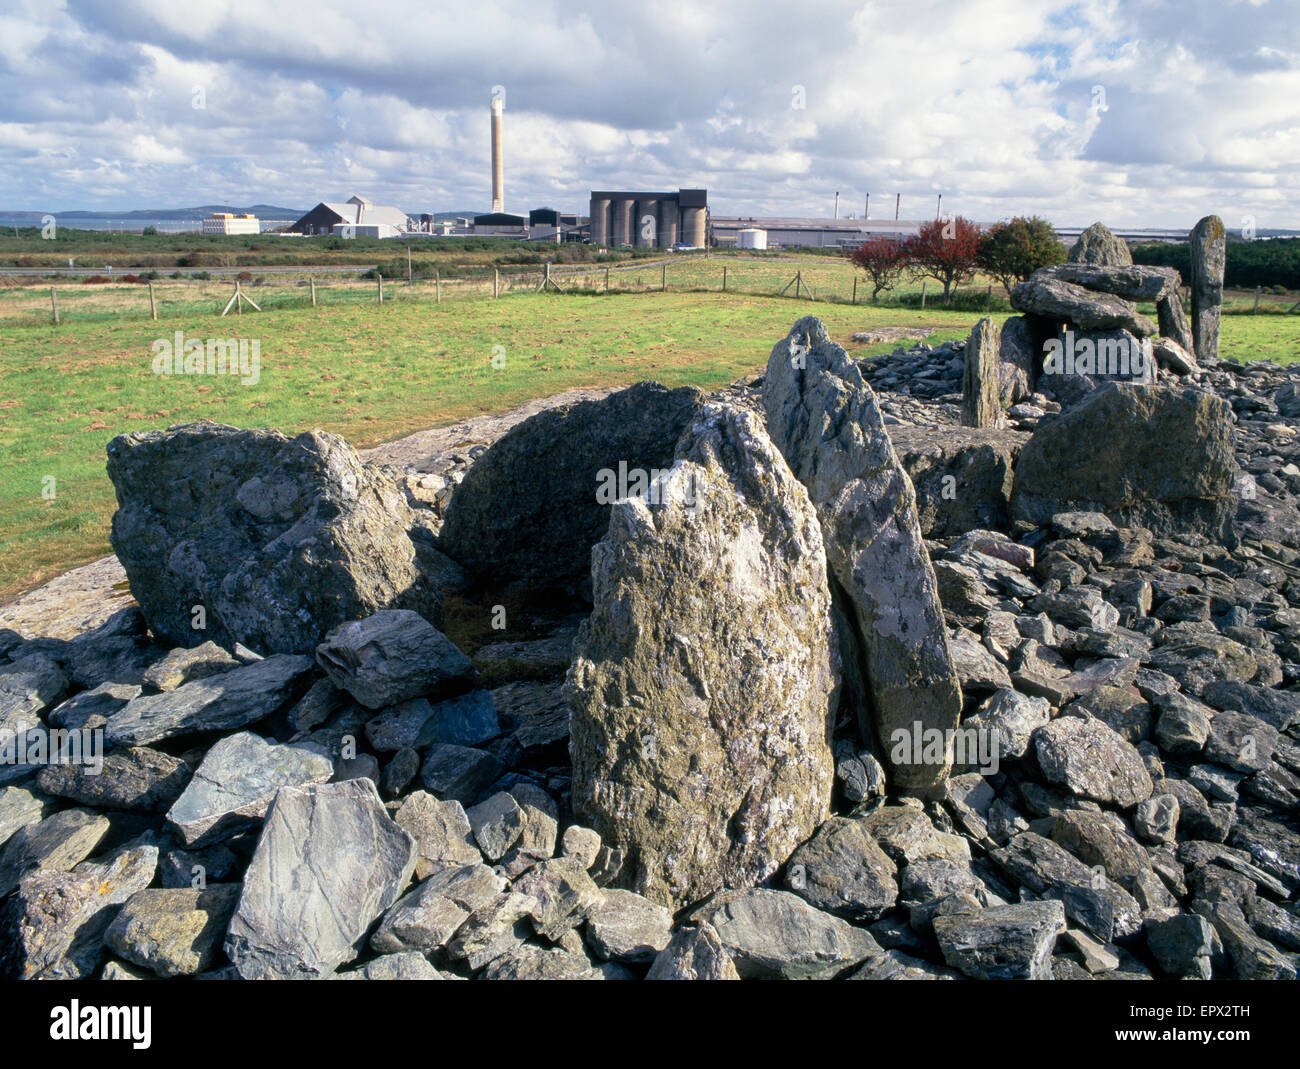 Trefignath neolithische Grab auf der Suche nach Osten in Richtung Anglesey Aluminium Fabrik, Holyhead, Anglesey, Nordwales Stockfoto